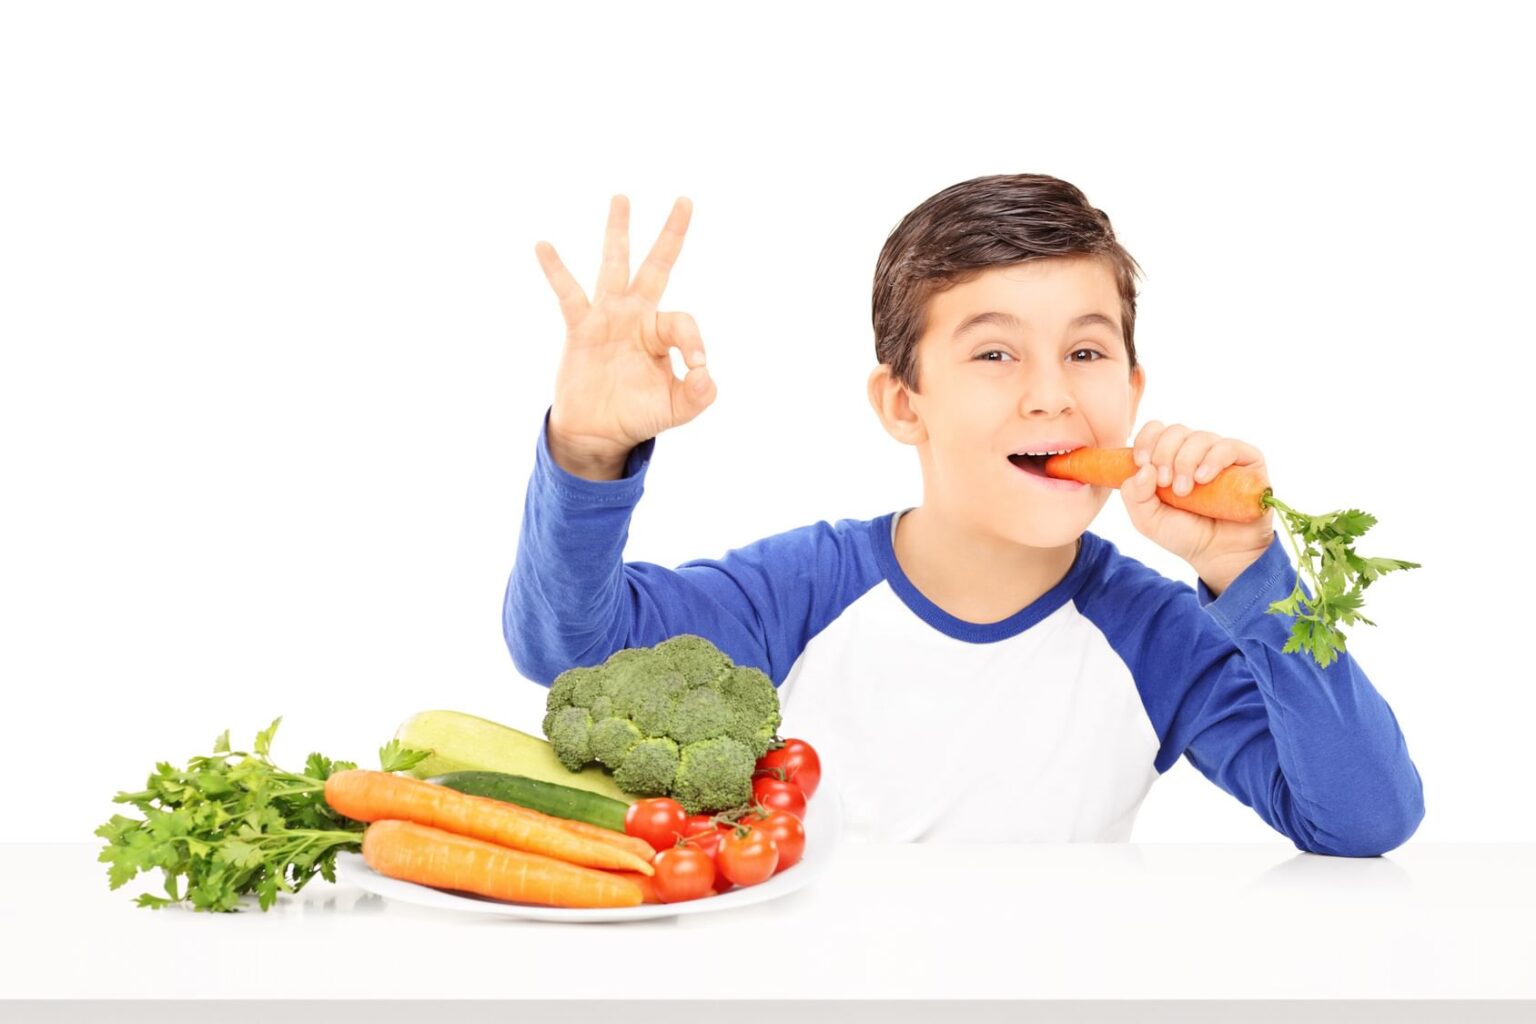 They like vegetables. Здоровое питание для подростков. Овощи для детей. Еда для детей. Человек ест.